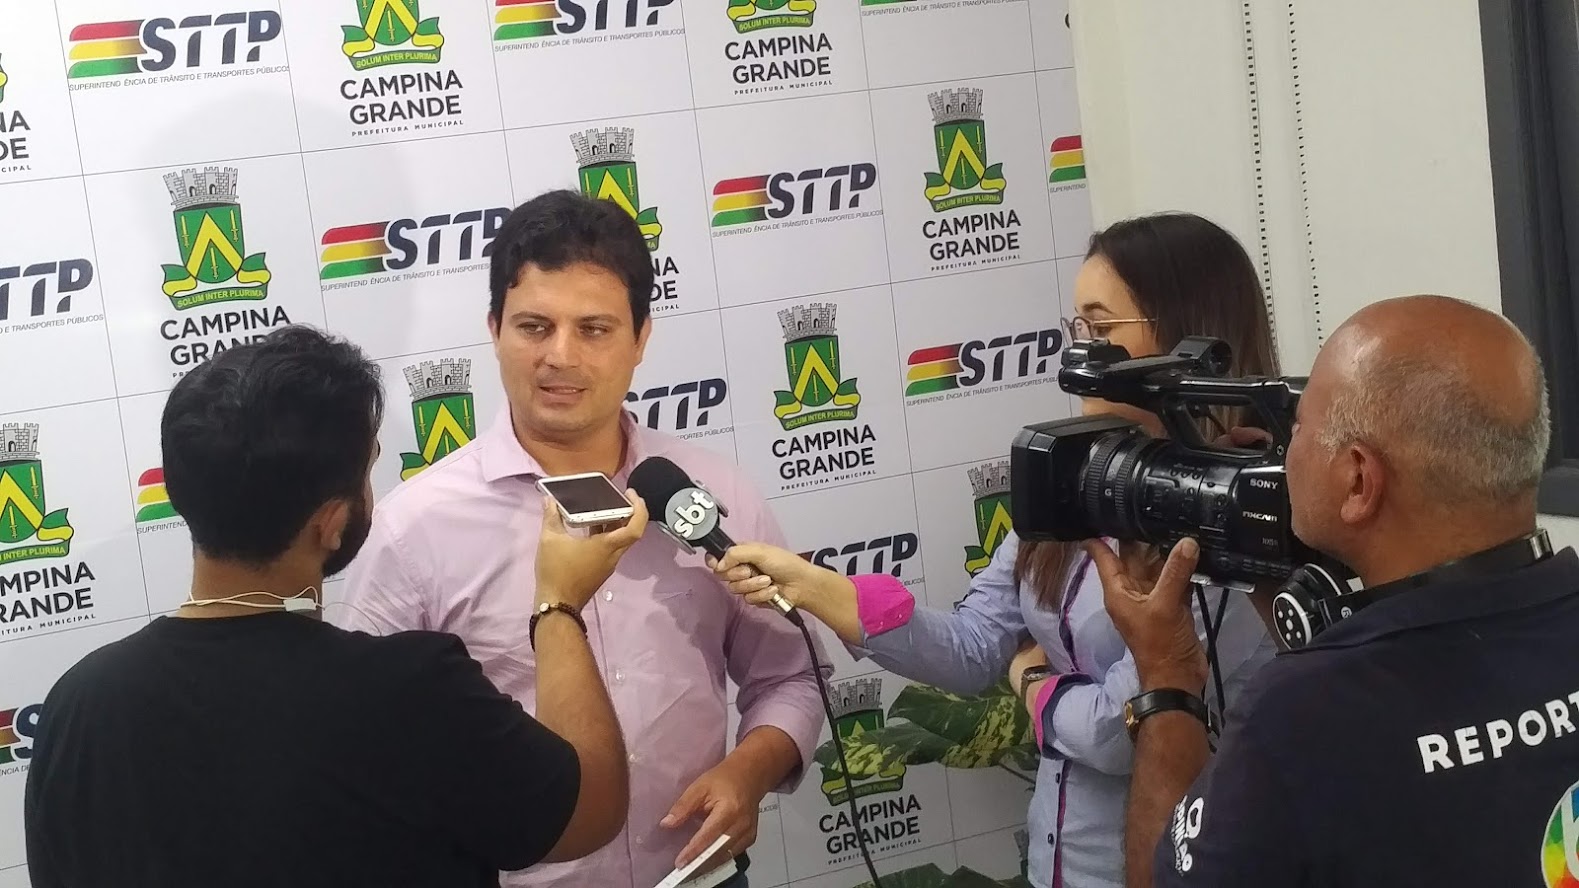 Além da moradia, é importante proporcionar mobilidade no Aluízio Campos, diz STTP